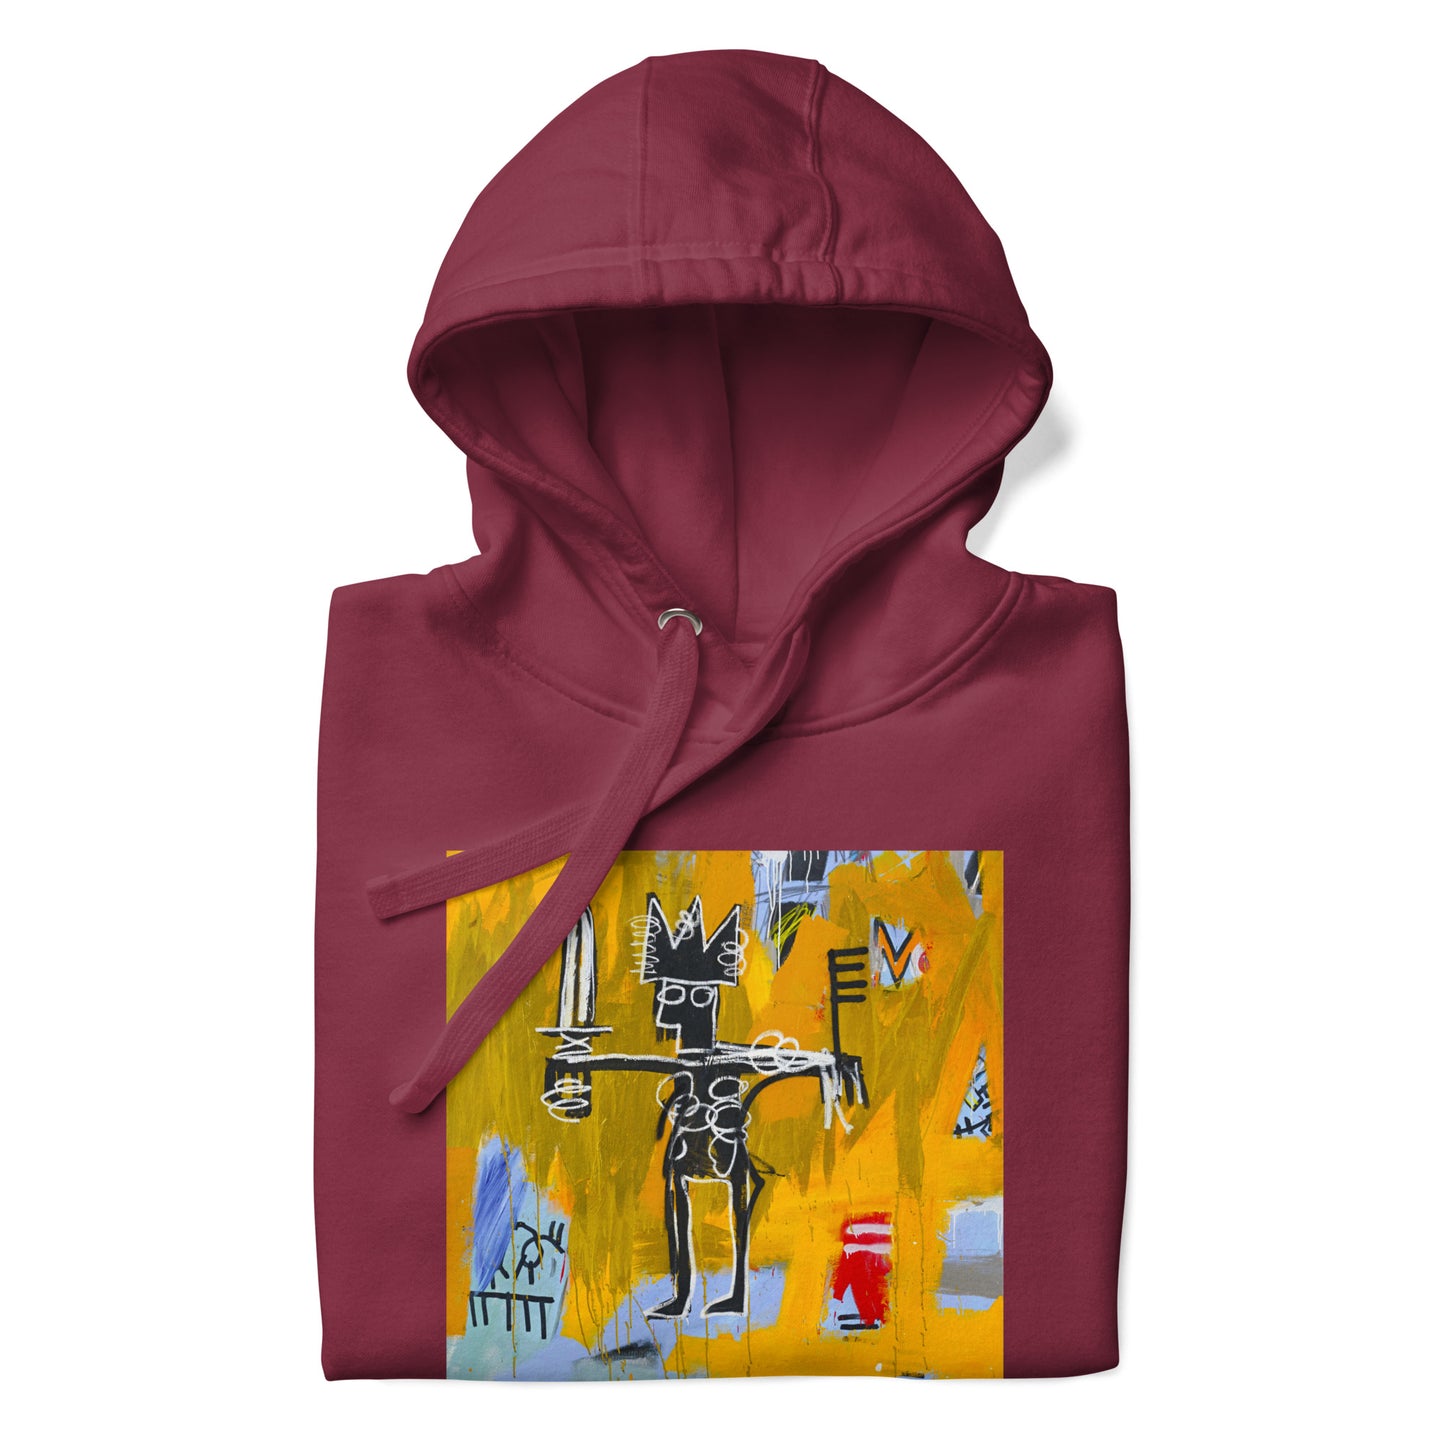 Jean-Michel Basquiat "Julius Caesar on Gold" Artwork Printed Premium Streetwear Sweatshirt Hoodie Burgundy Red